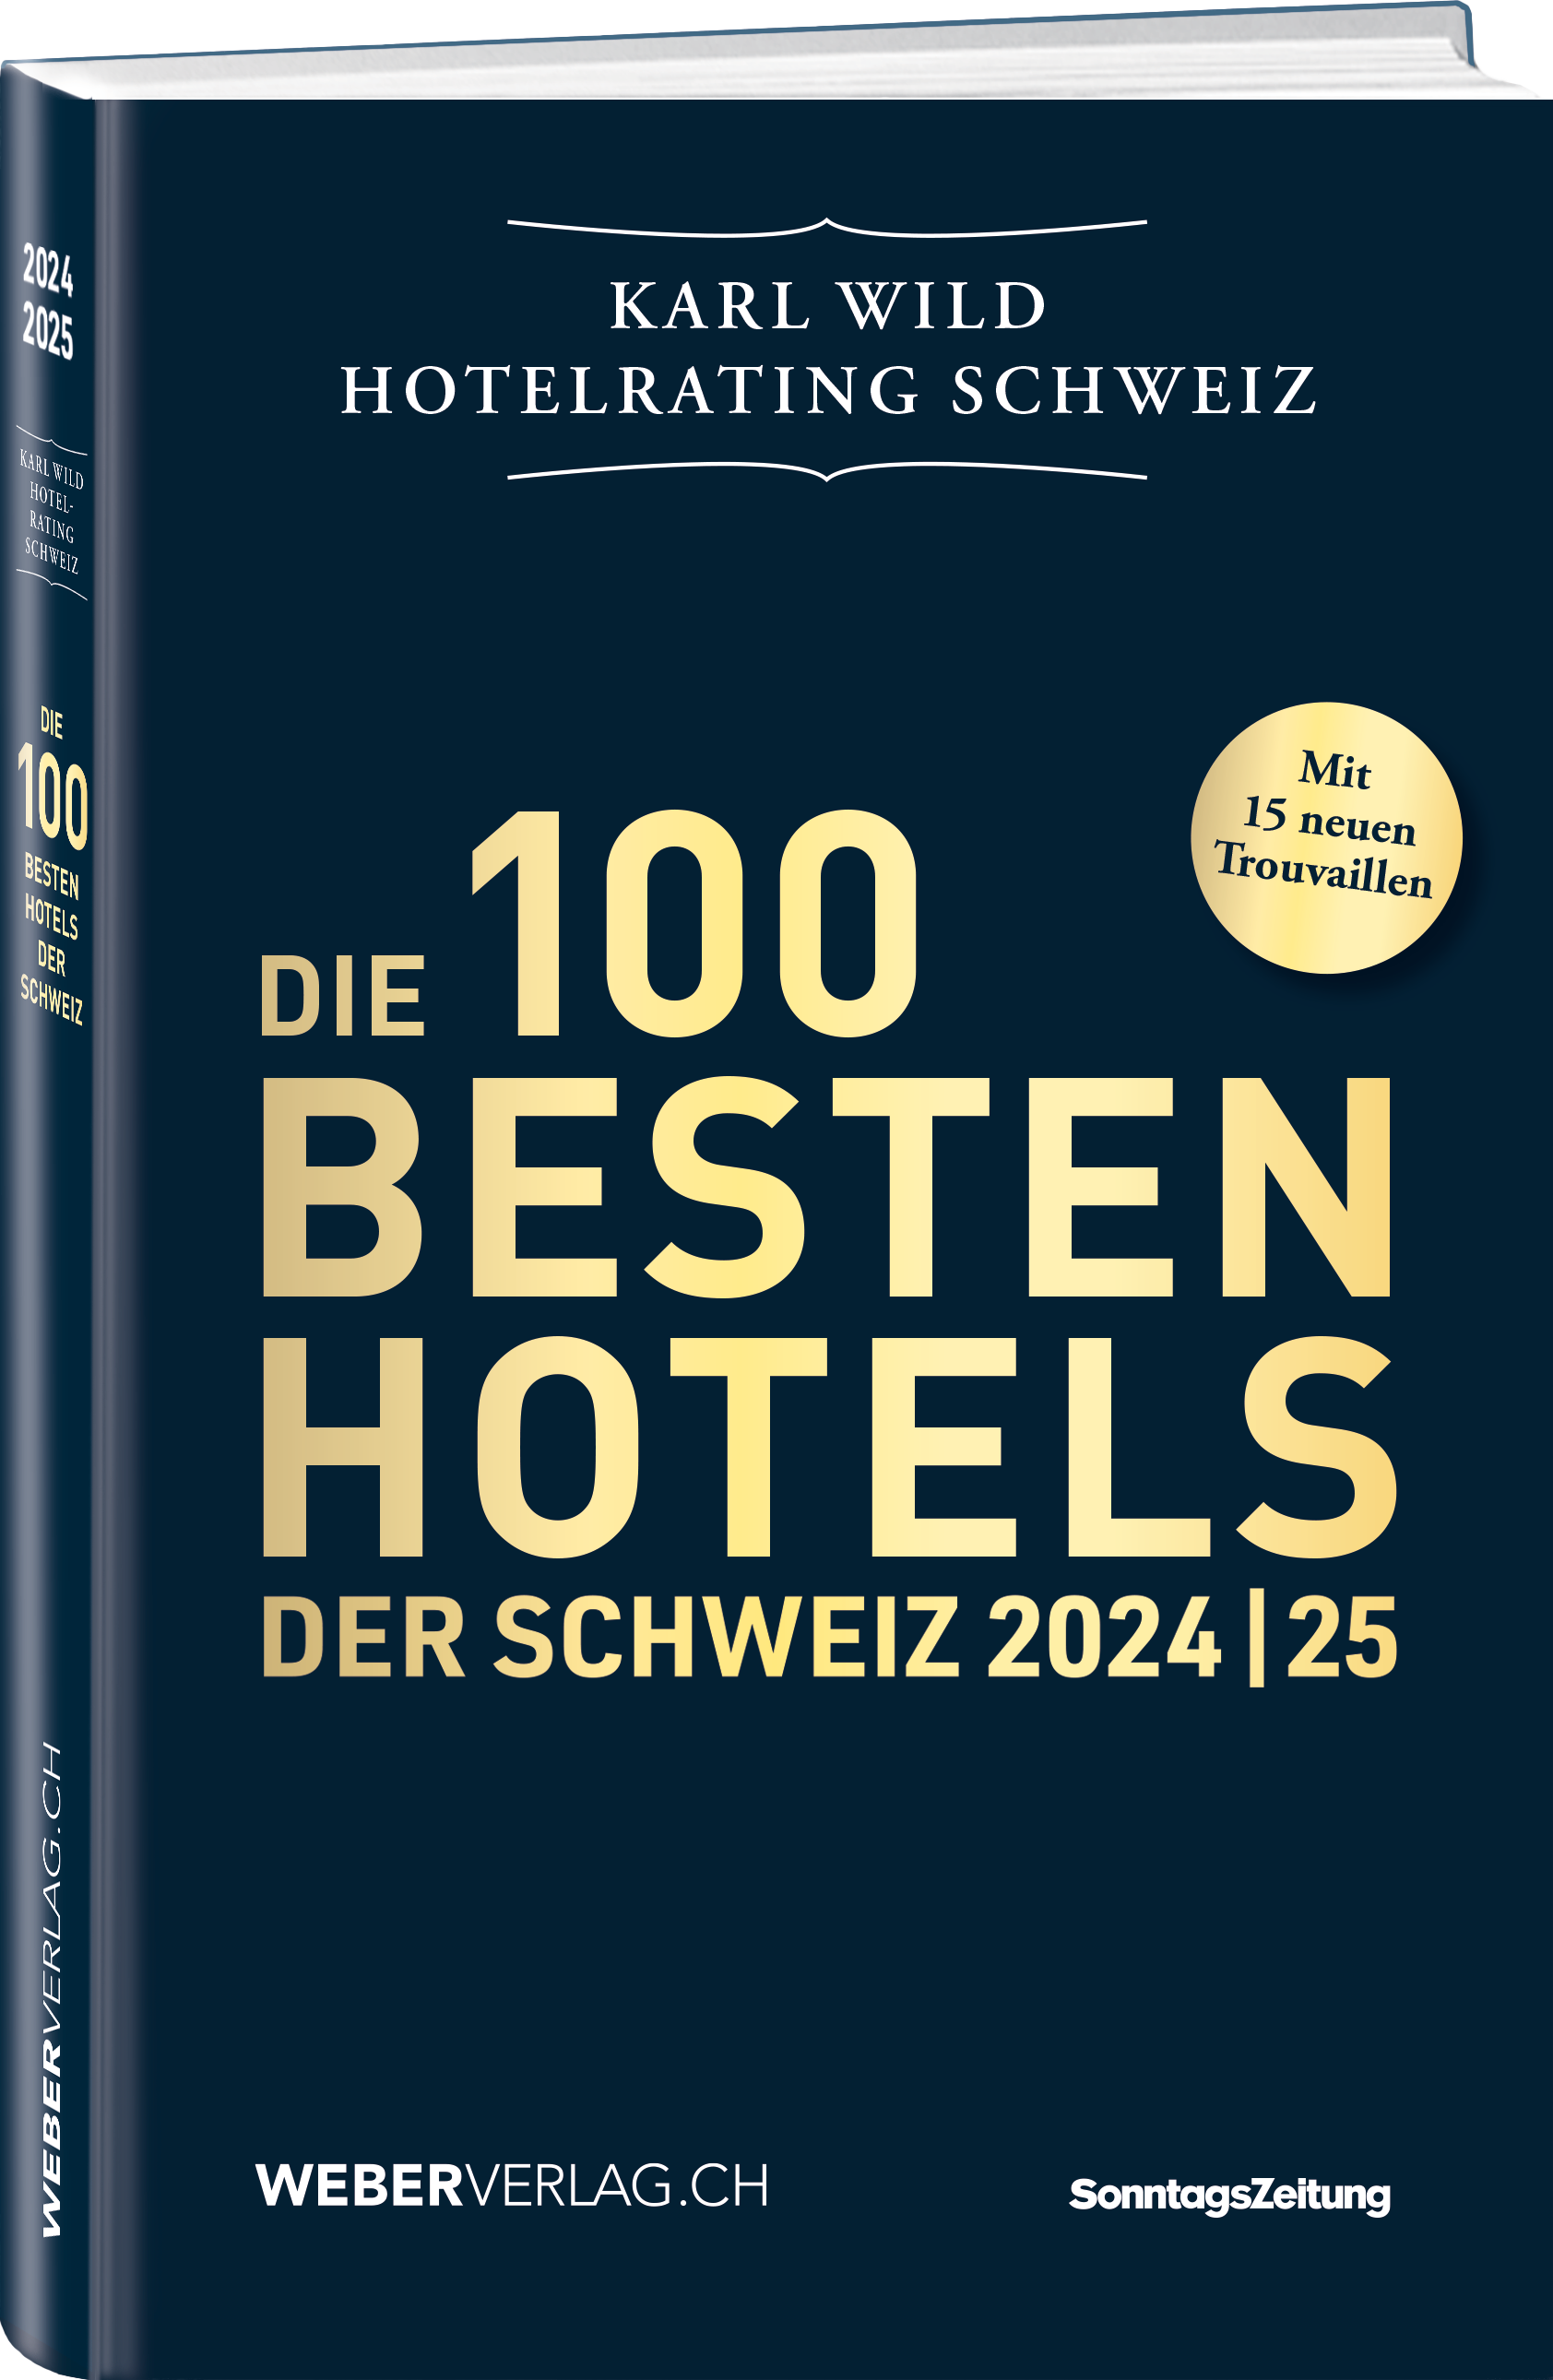 Karl Wild | Die 100 besten Hotels der Schweiz 2024/25 - • WEBER VERLAG